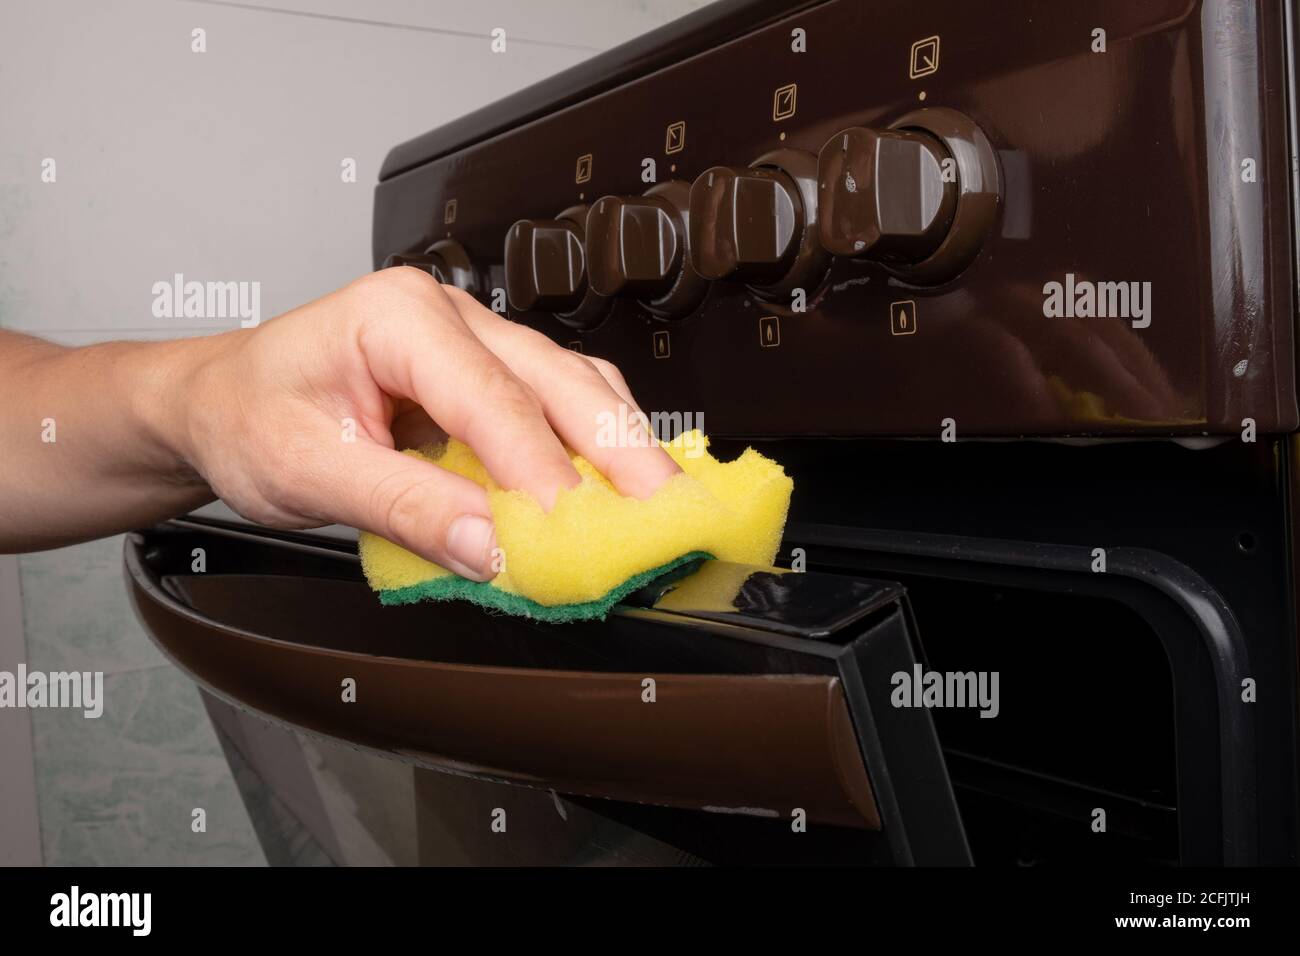 nettoyage de la surface d'un four à gaz à l'aide d'une lavette jaune, nettoyage de la cuisine. Banque D'Images